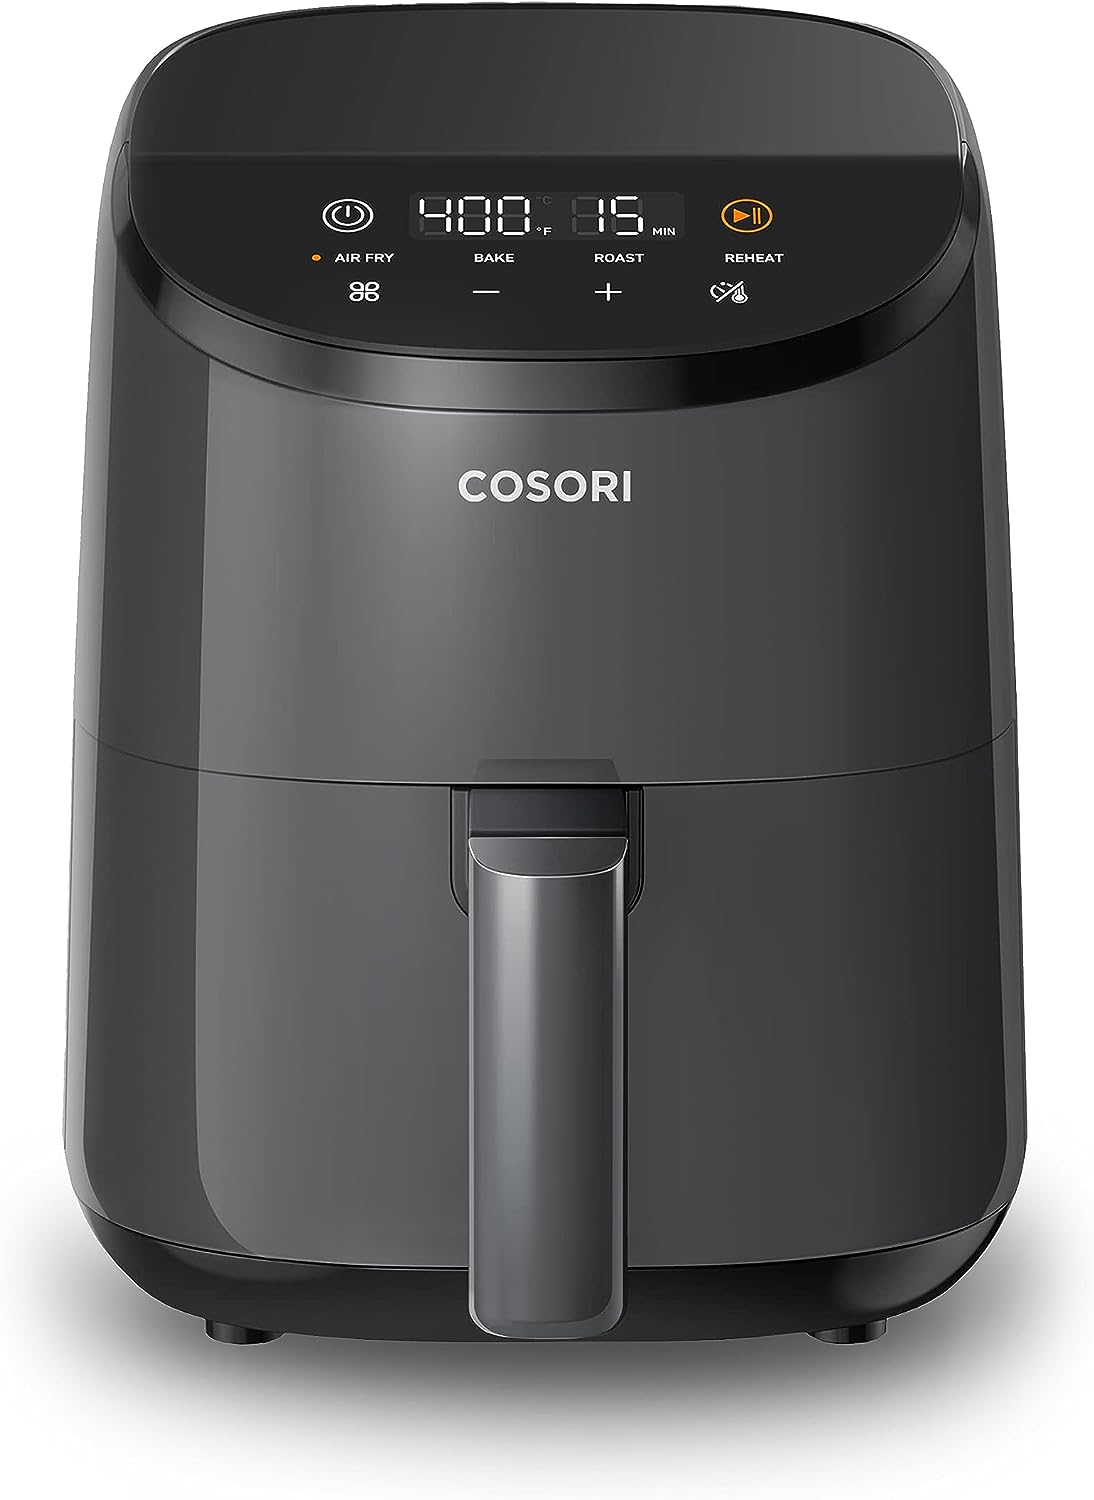 Cosori Mini Air Fryer 2.1 Qt